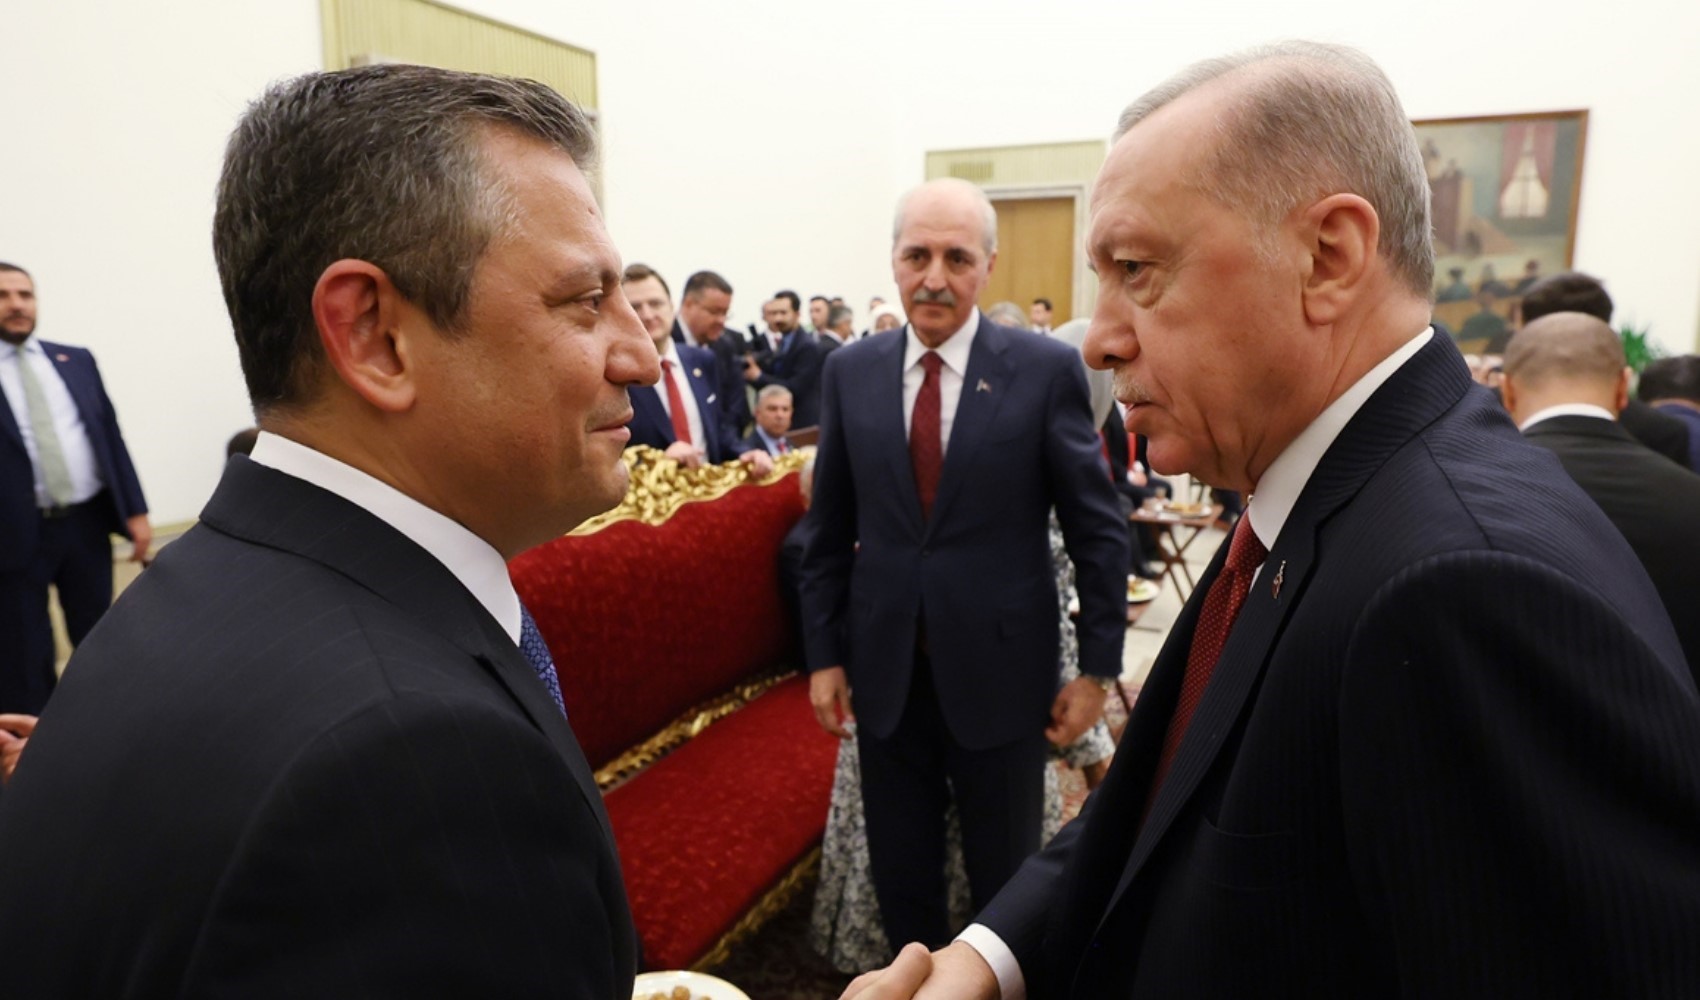 'Yumuşama' mesajı vermişti: Erdoğan, muhalefet hakkında bu sözleri söyledi...